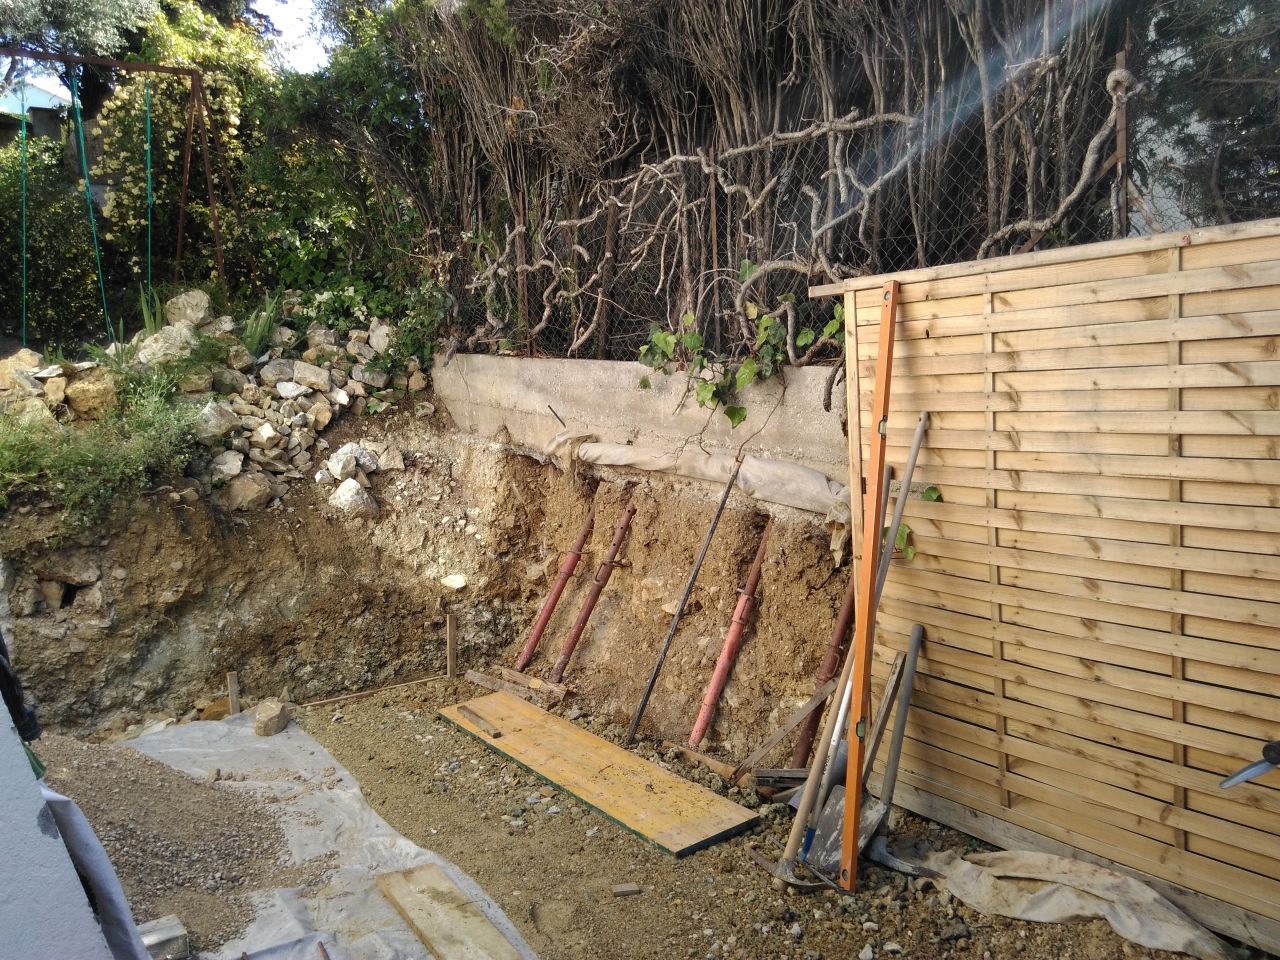 Vue d'ensemble - le mur de clôture après décaissement du terrain